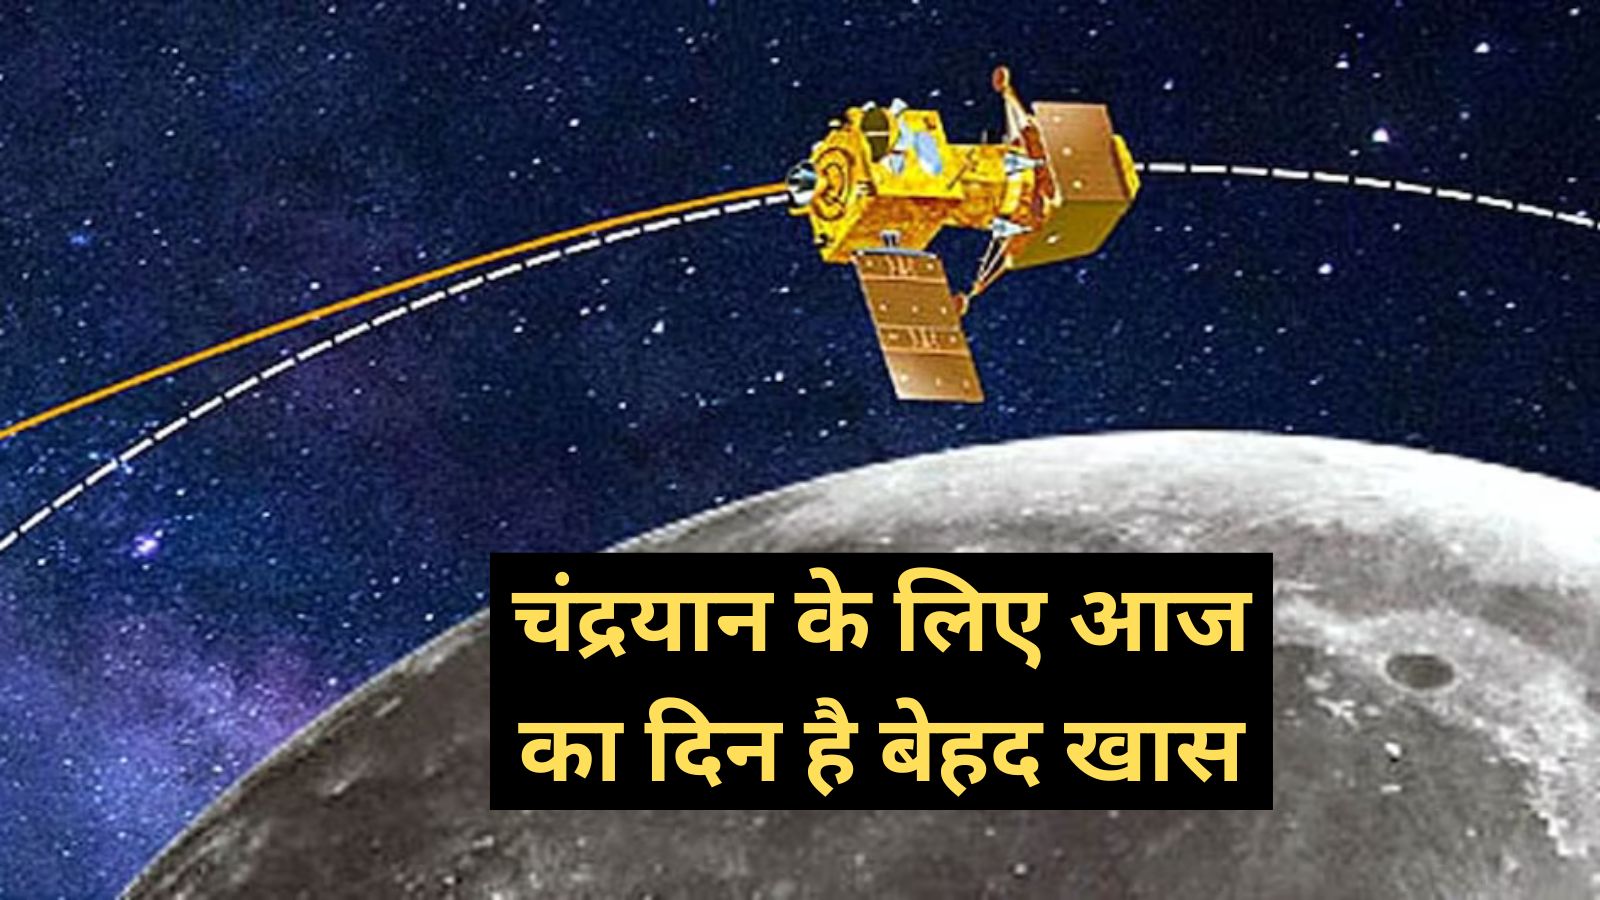 Chandrayaan-3:चंद्रयान के लिए आज का दिन है बेहद खास,चंद्रयान-3 अब चांद की सतह से सिर्फ 150 किमी दूर